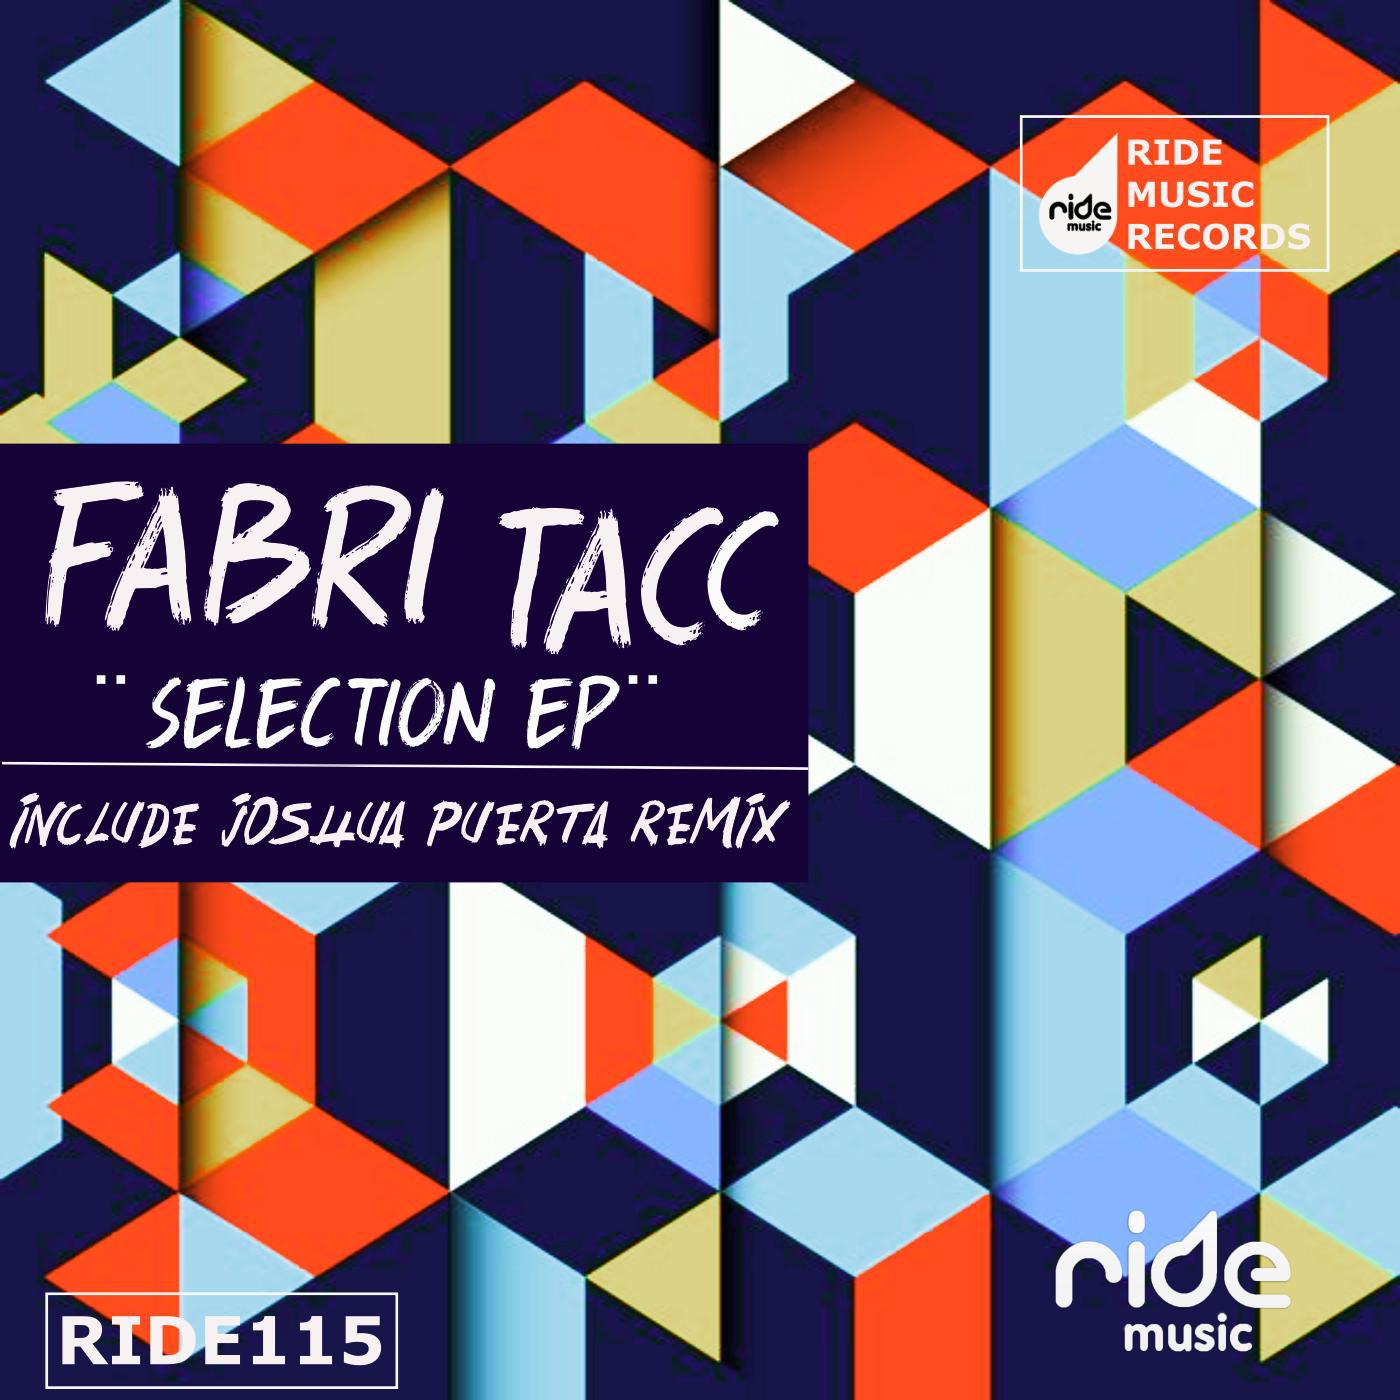 Fabri Tacc - For You (Joshua Puerta Remix)